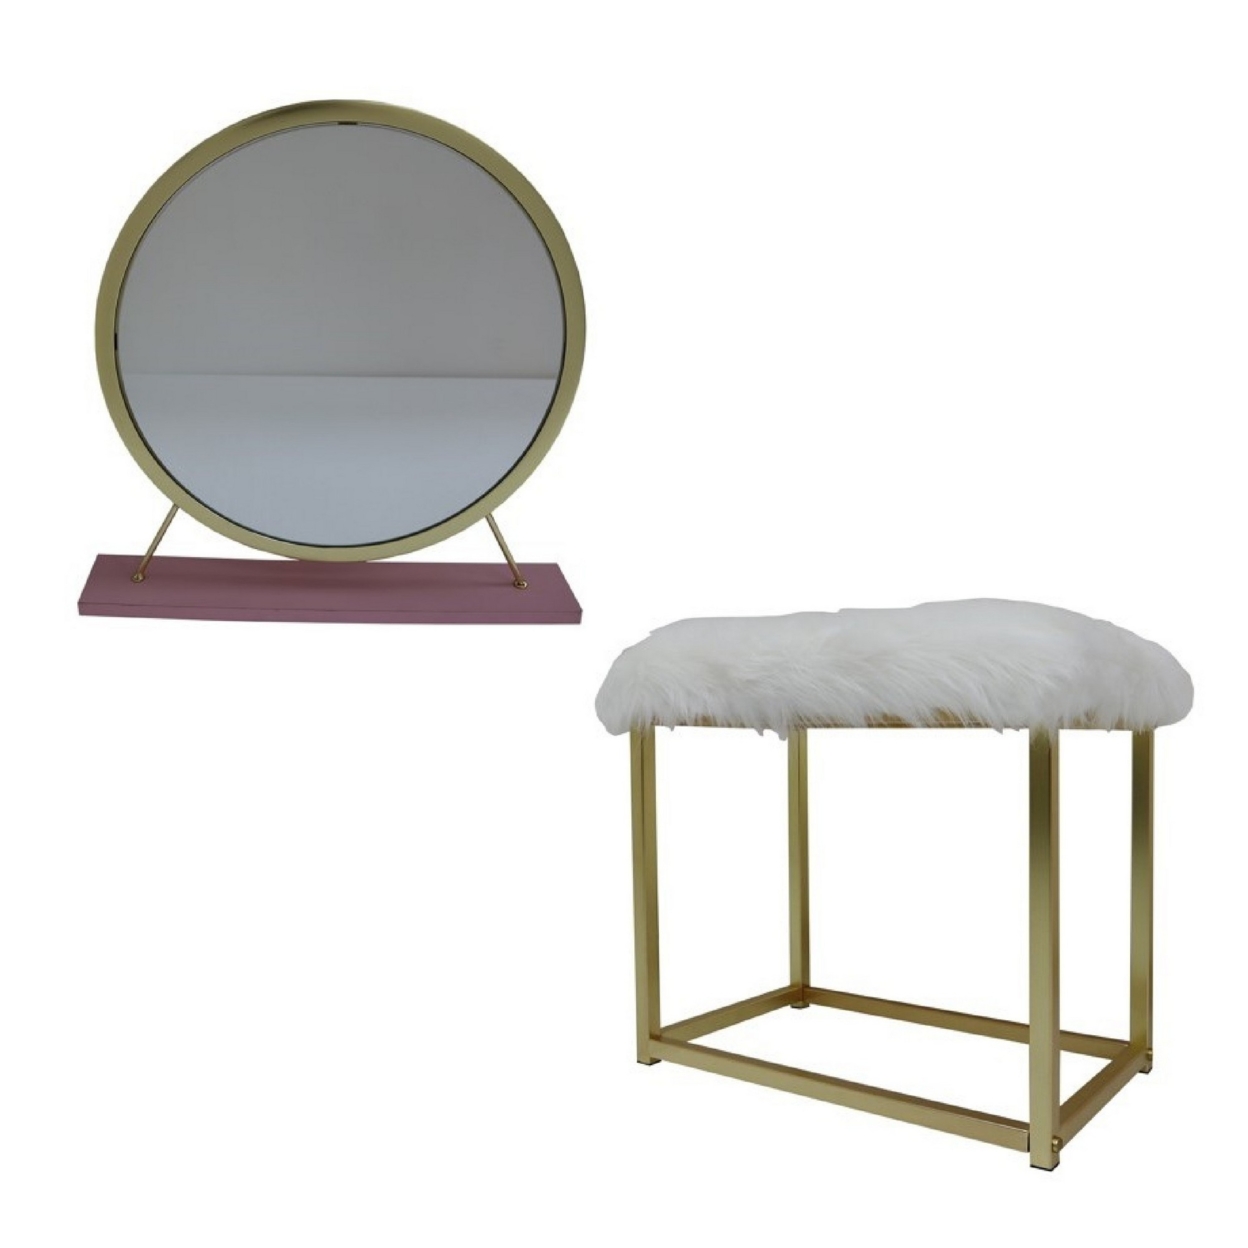 Rose Round Vanity Mirror With Stool, Faux Fur Seat, Brass. Pink- Saltoro Sherpi